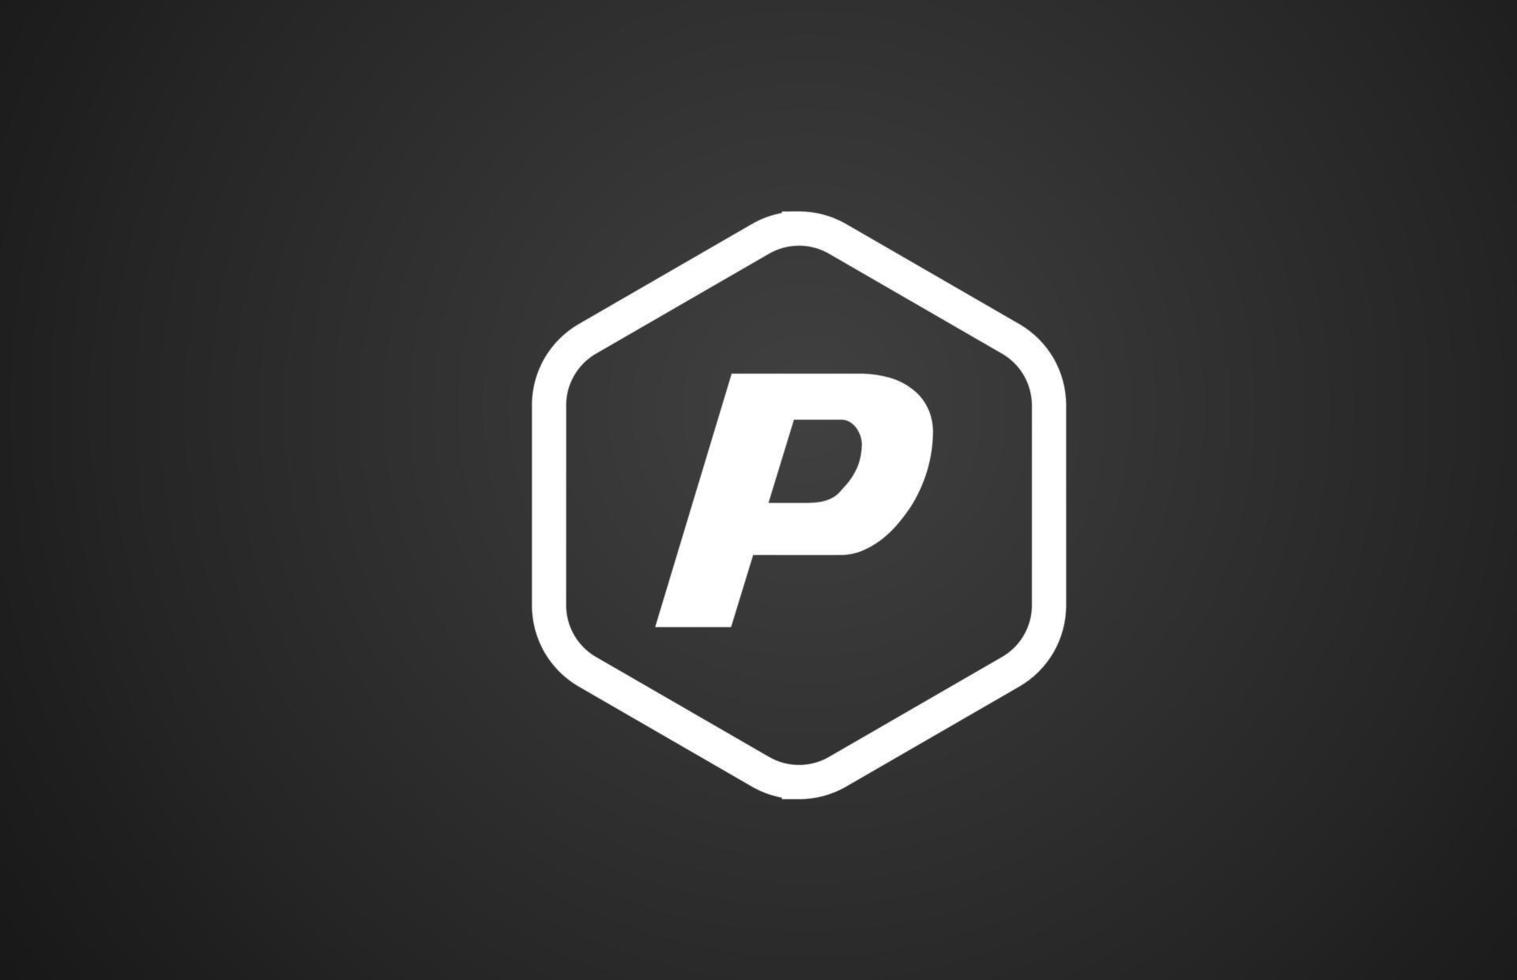 P blanco y negro diseño de icono de logotipo de letra del alfabeto con rombo para negocios y empresa vector